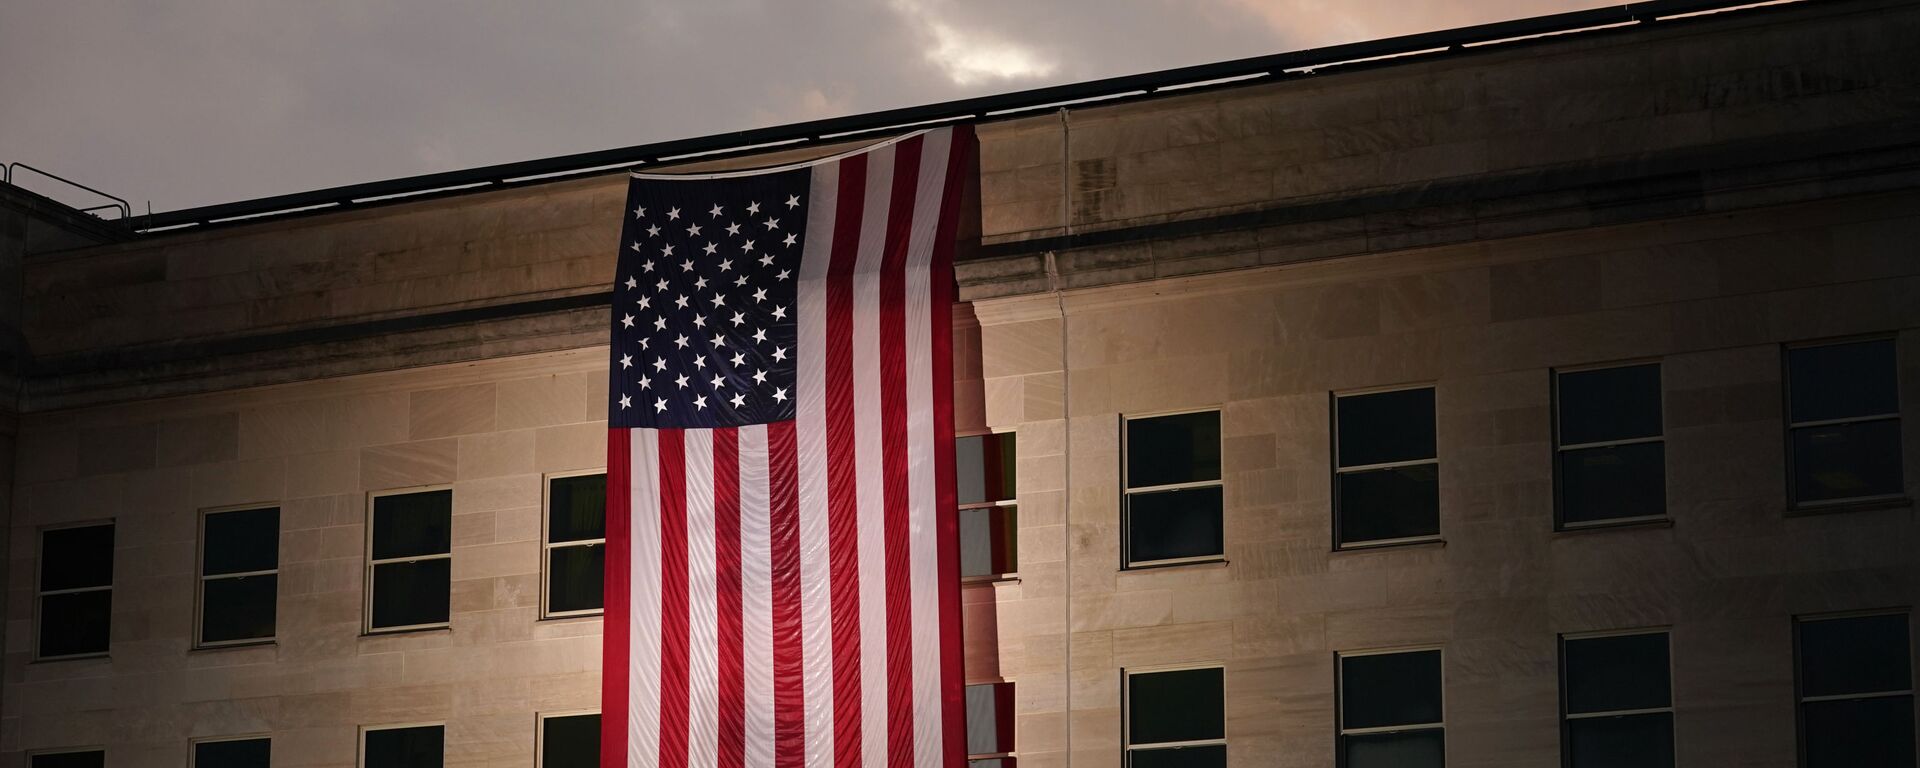 Здание Пентагона с флагом США в память о жертвах трагедии 11 сентября - Sputnik Србија, 1920, 23.02.2022